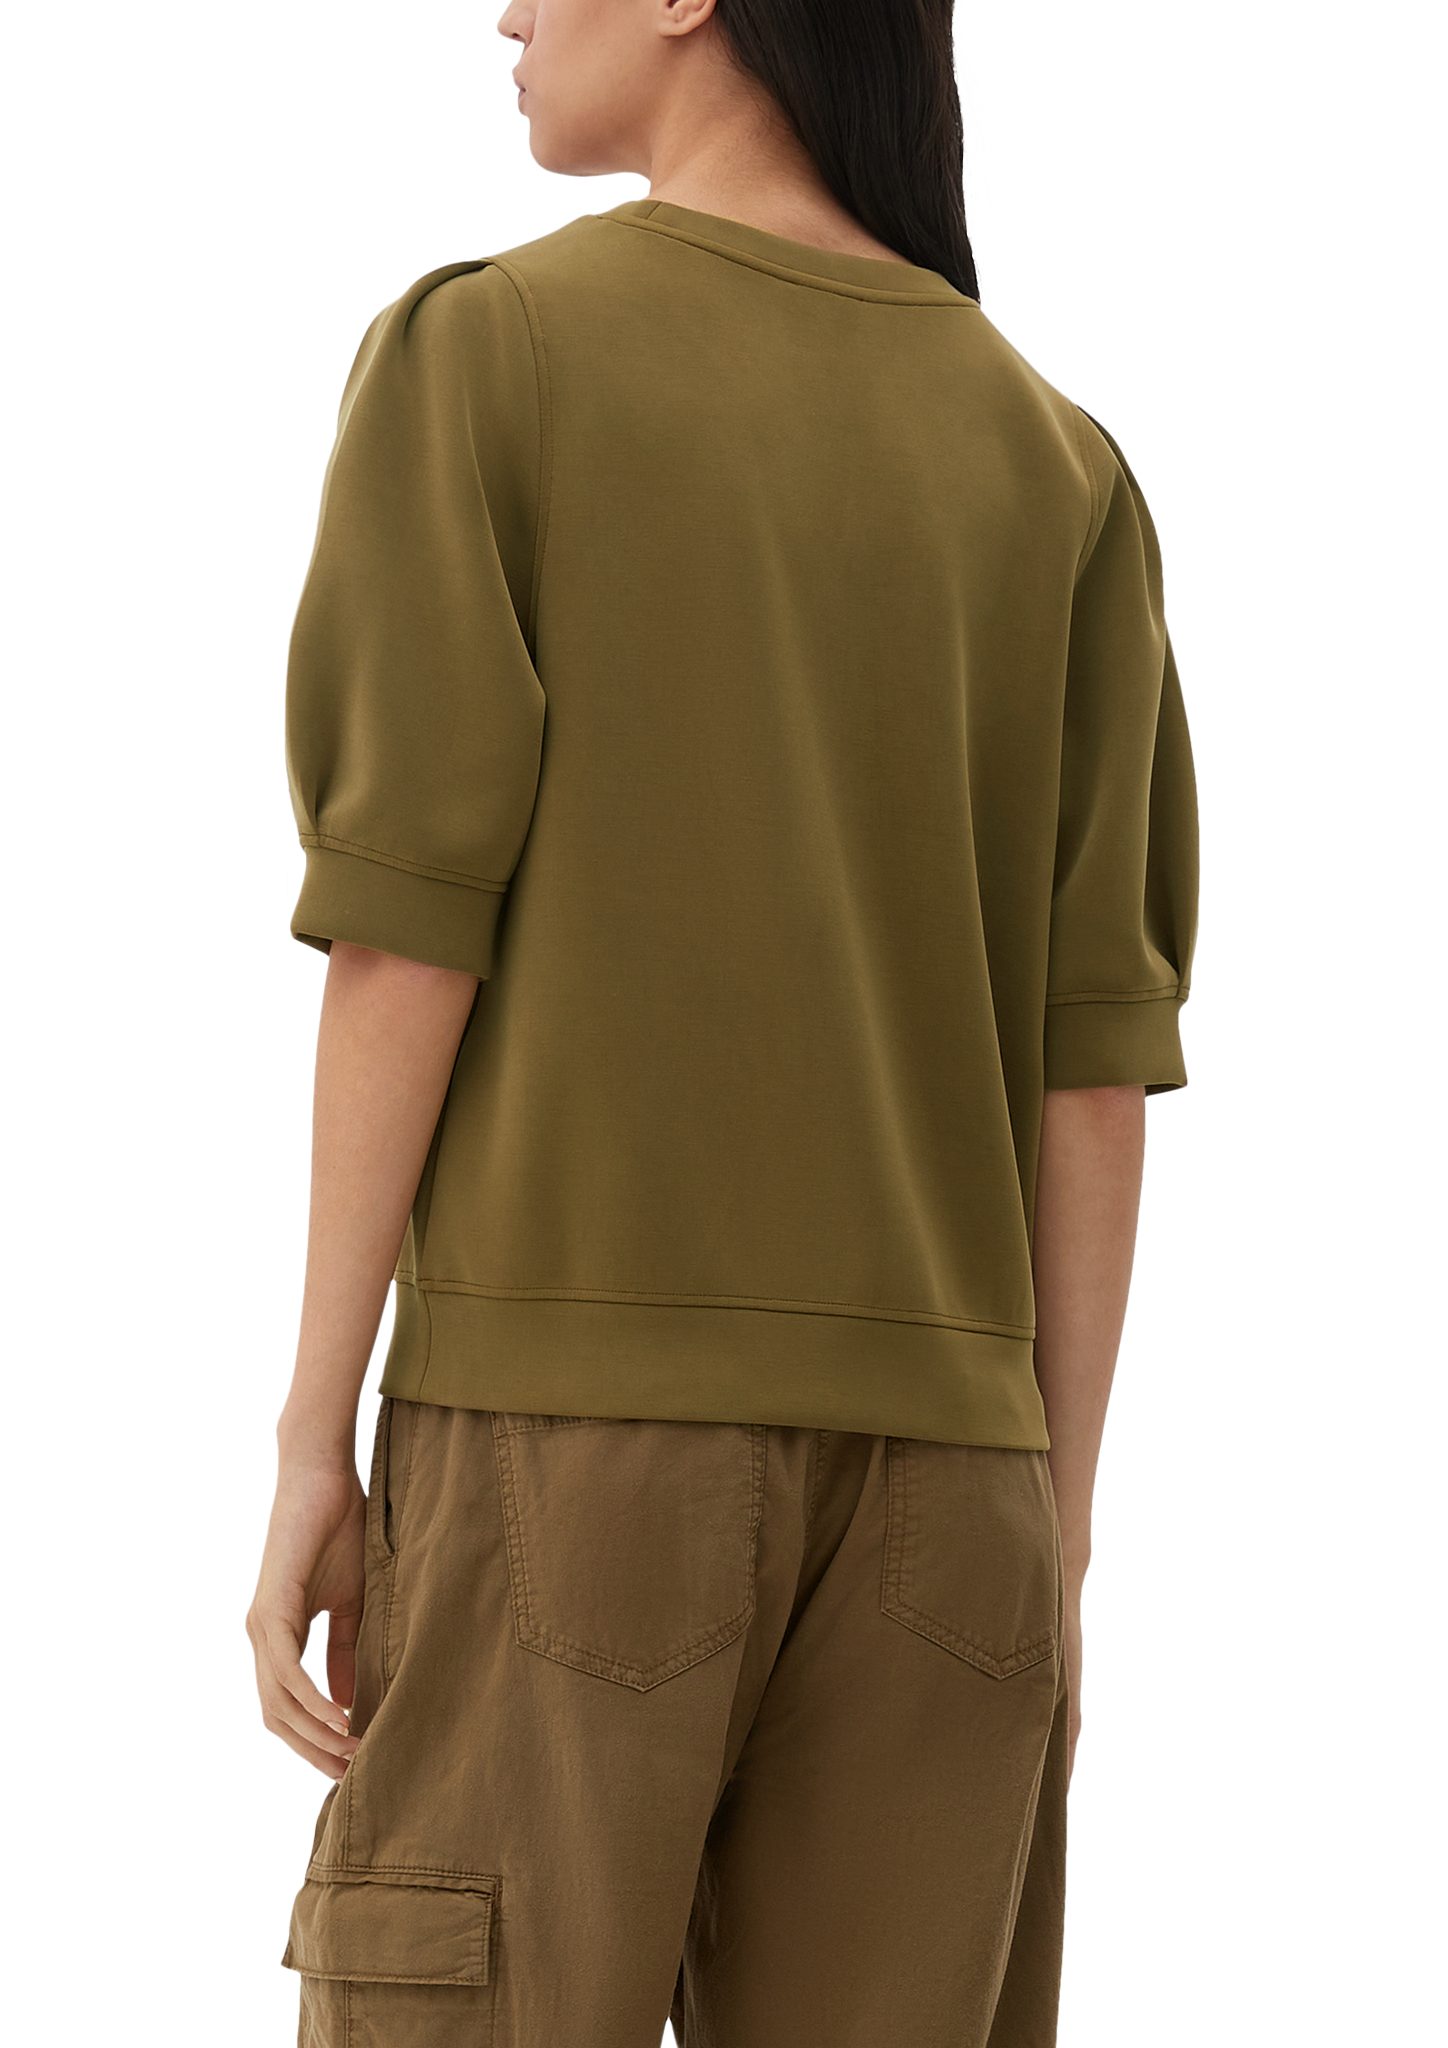 halblangem s.Oliver Arm olivgrün mit Sweatshirt Sweatshirt Raffung